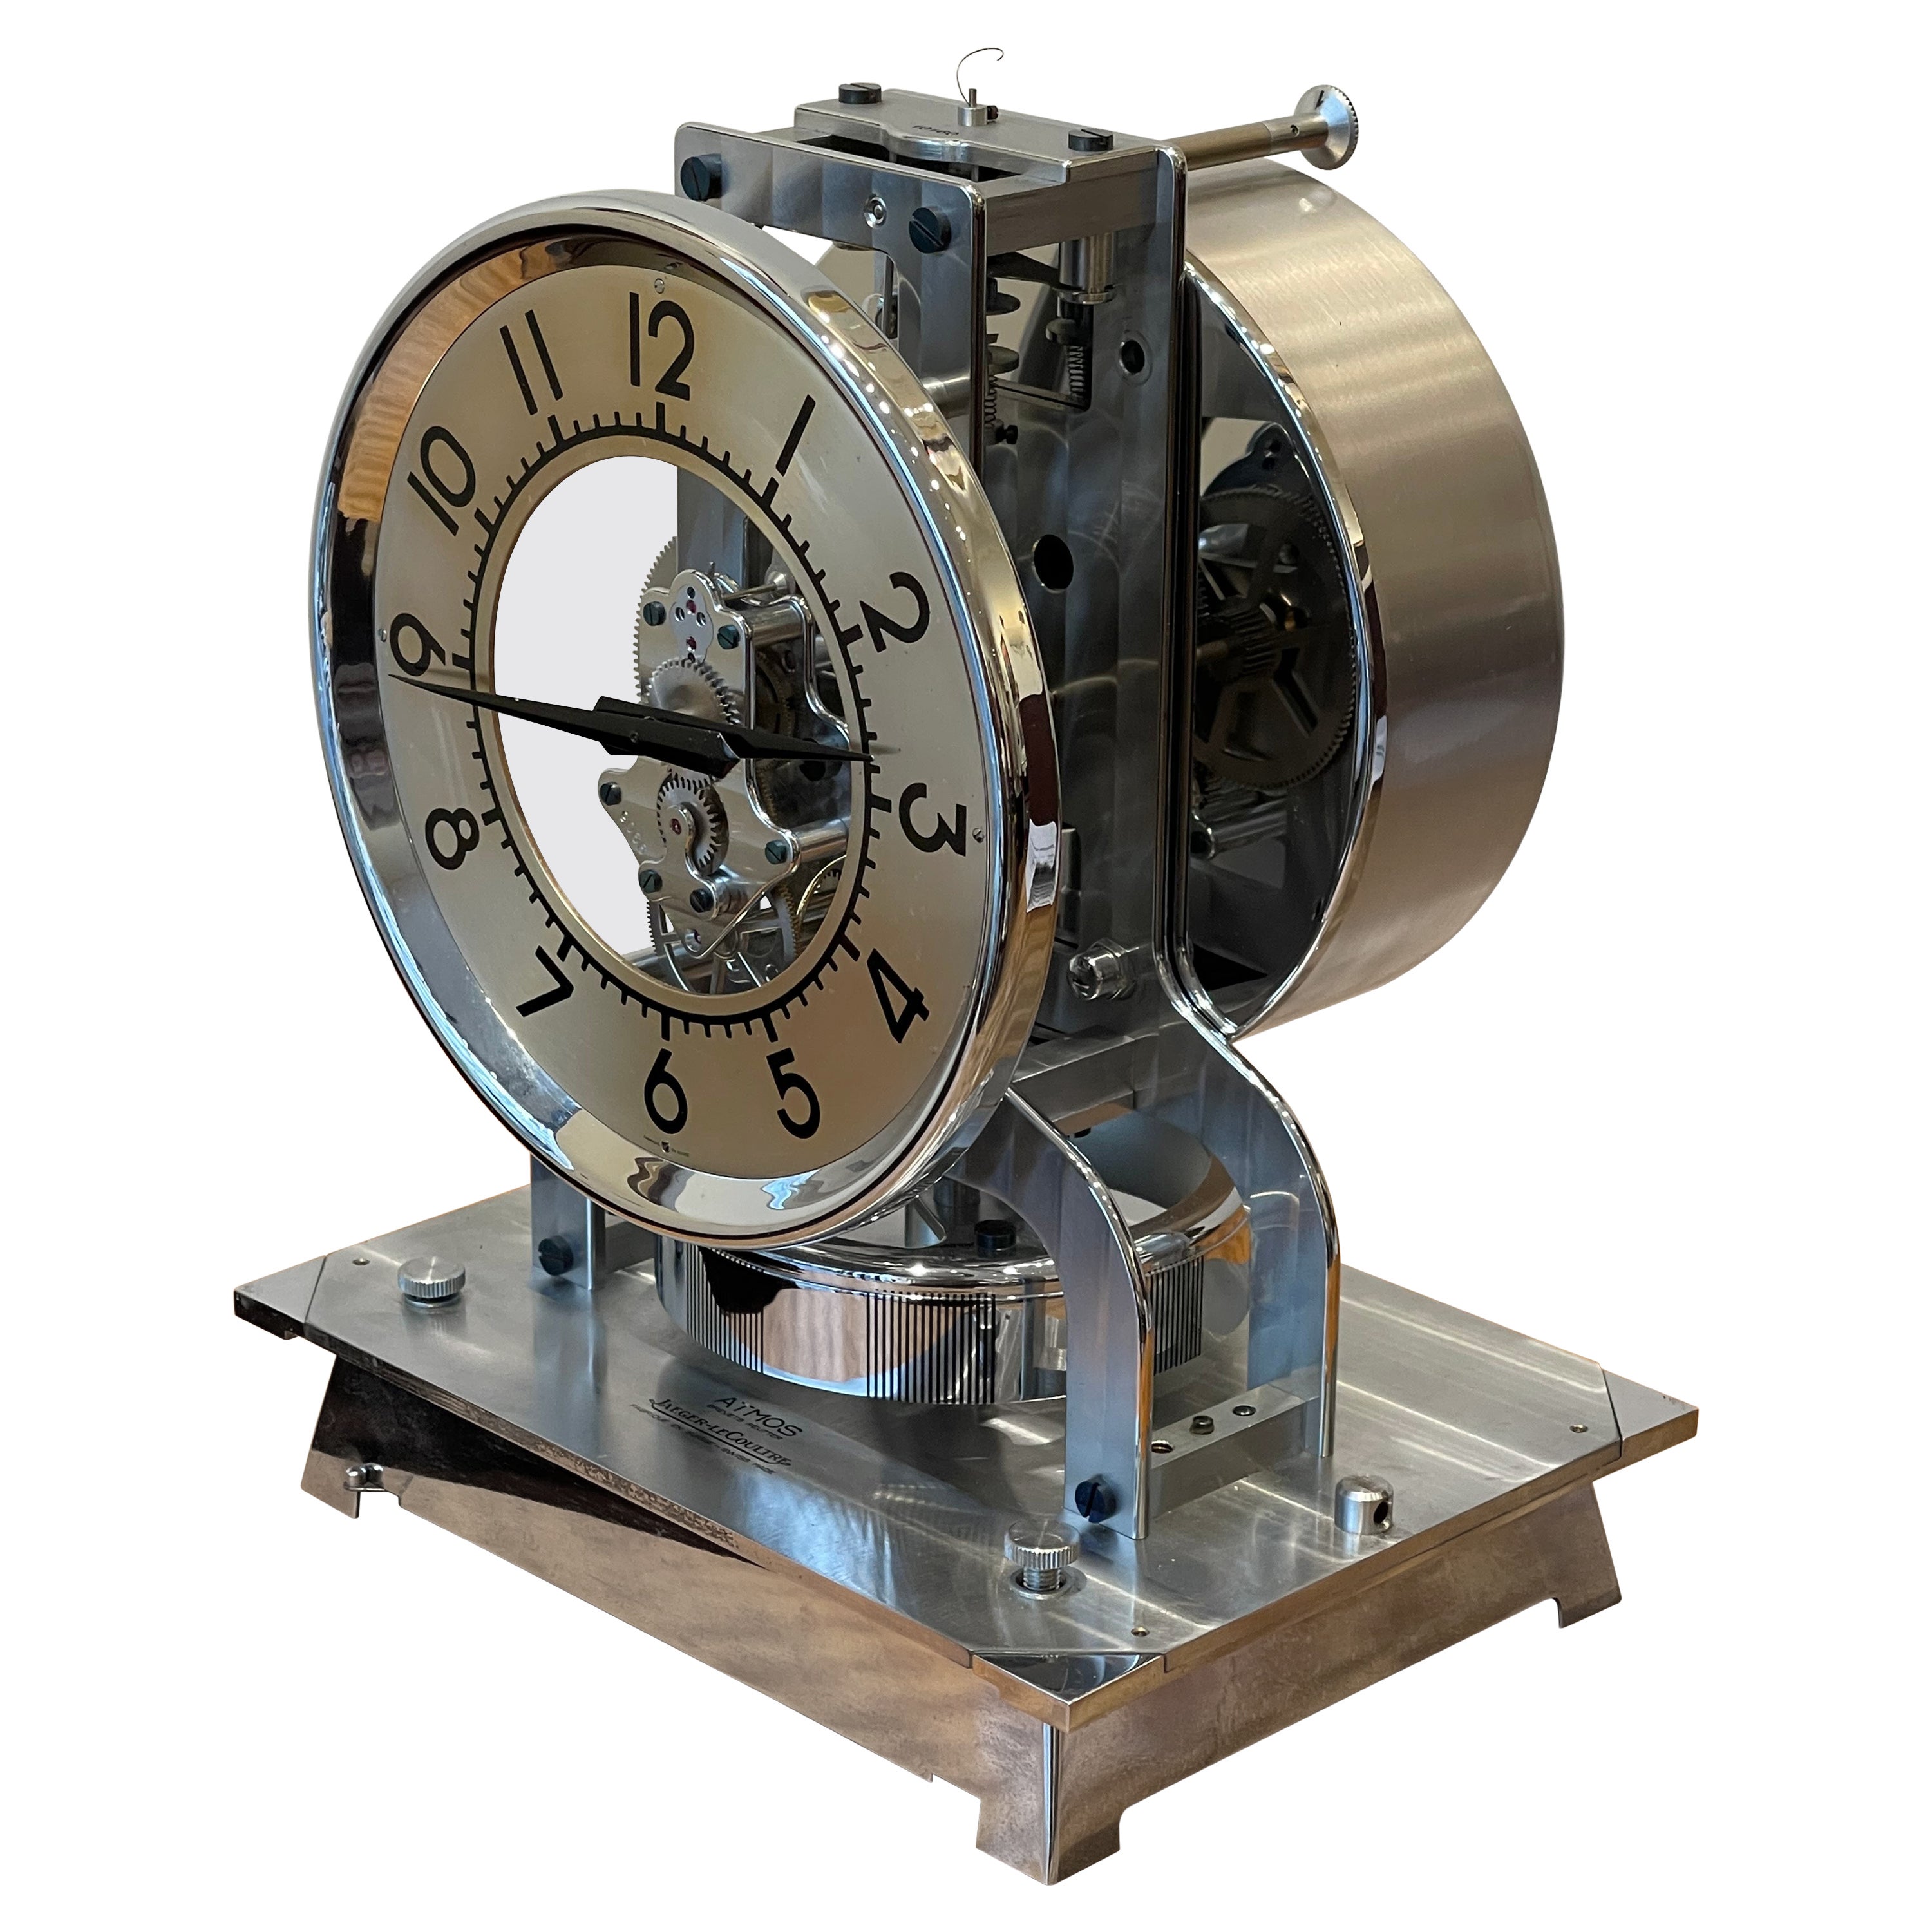 Exceptionnelle horloge de table Atmos de Jaeger-LeCoultre, vers 1940, Suisse